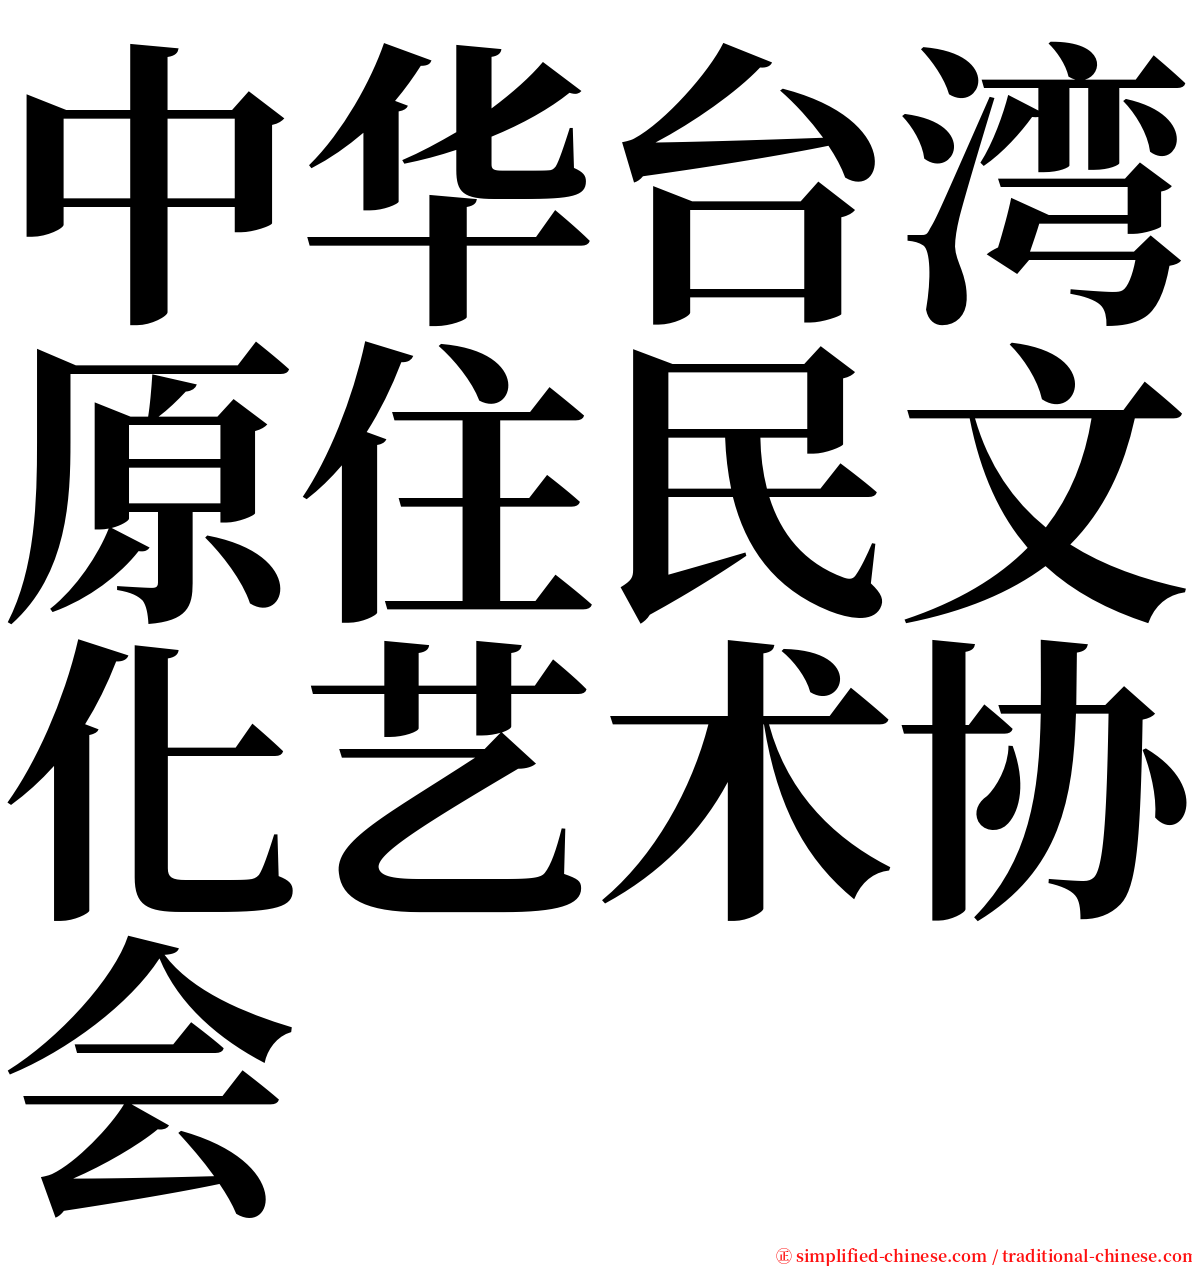 中华台湾原住民文化艺术协会 serif font